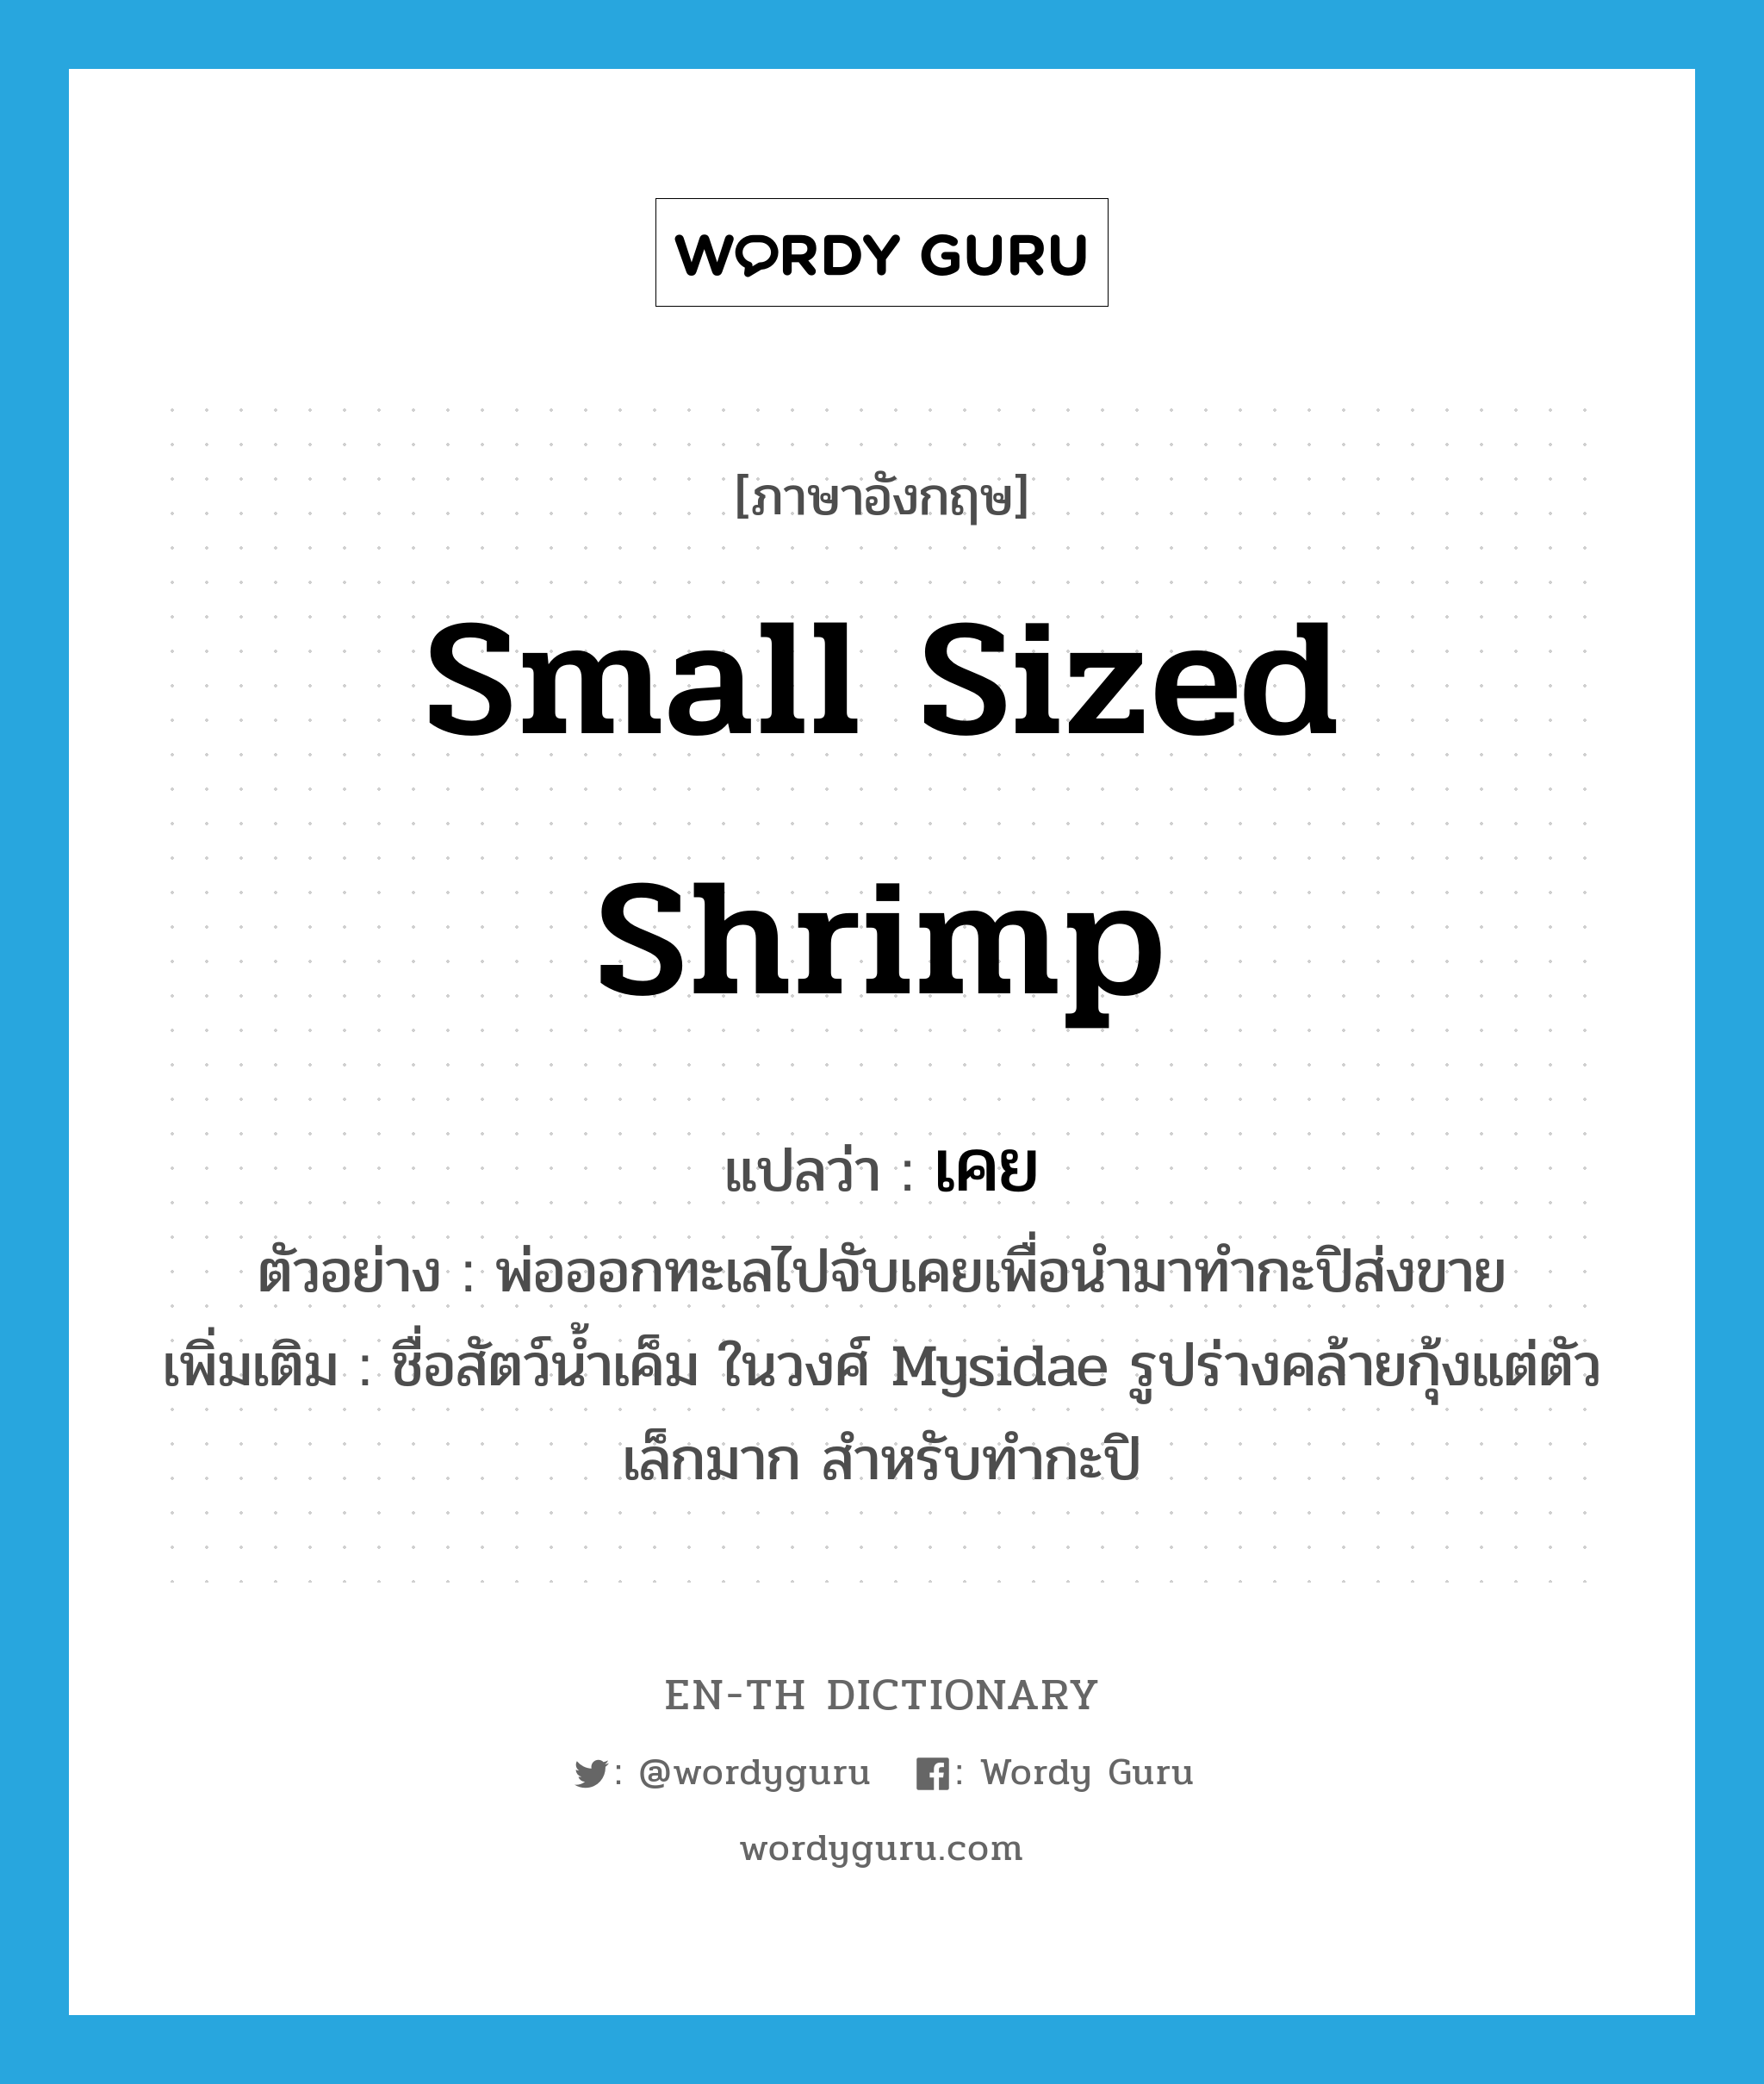 small sized shrimp แปลว่า?, คำศัพท์ภาษาอังกฤษ small sized shrimp แปลว่า เคย ประเภท N ตัวอย่าง พ่อออกทะเลไปจับเคยเพื่อนำมาทำกะปิส่งขาย เพิ่มเติม ชื่อสัตว์น้ำเค็ม ในวงศ์ Mysidae รูปร่างคล้ายกุ้งแต่ตัวเล็กมาก สำหรับทำกะปิ หมวด N